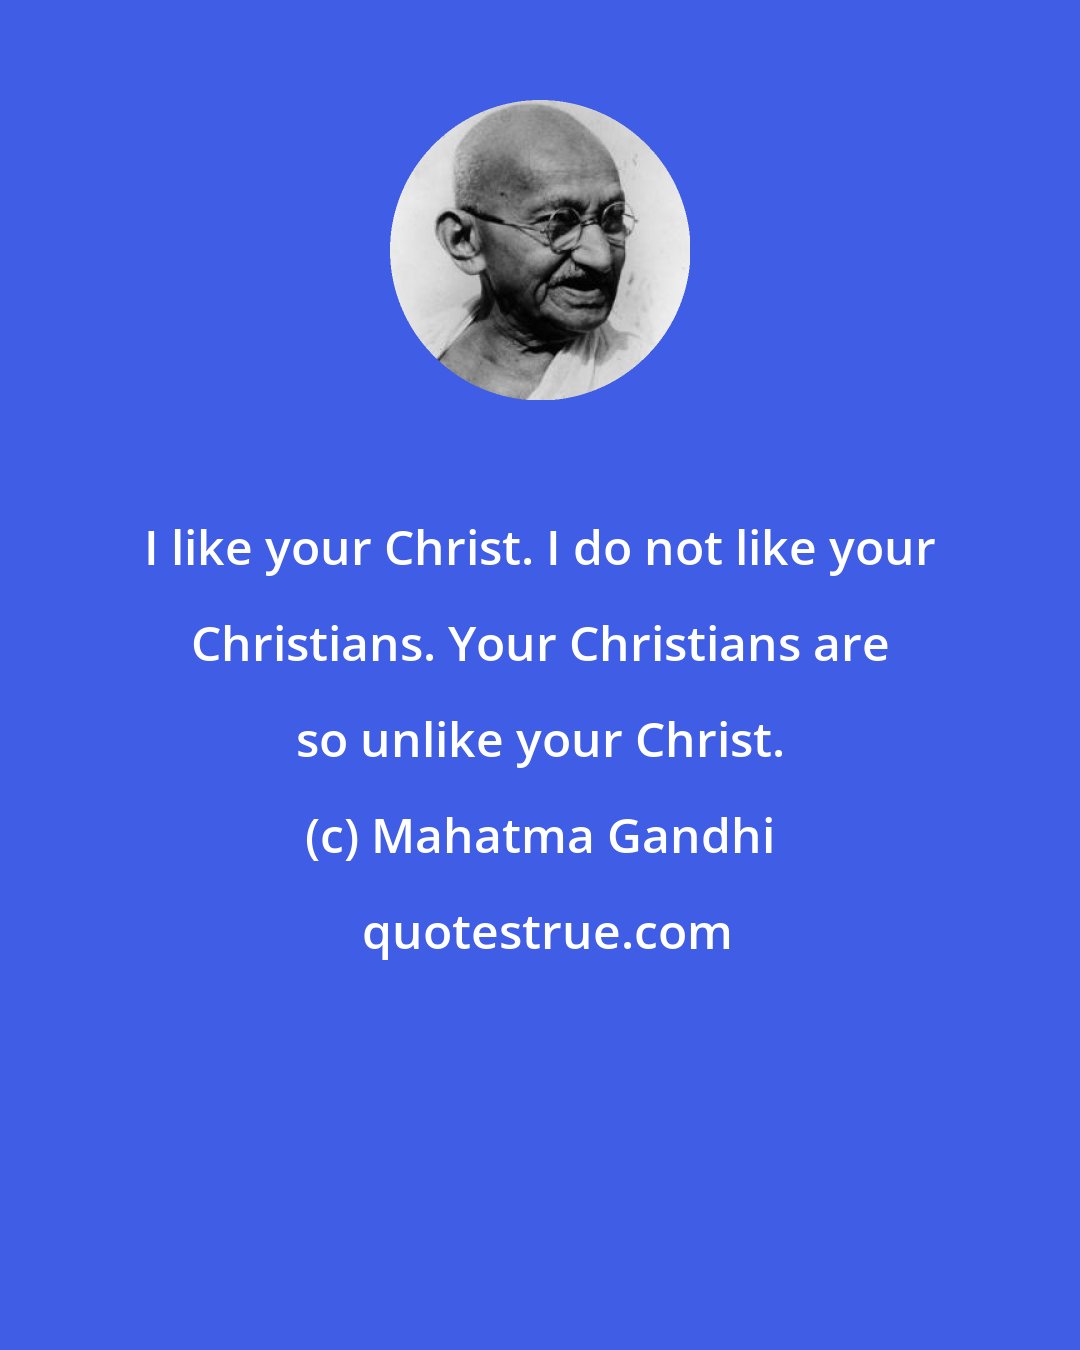 Mahatma Gandhi: I like your Christ. I do not like your Christians. Your Christians are so unlike your Christ.